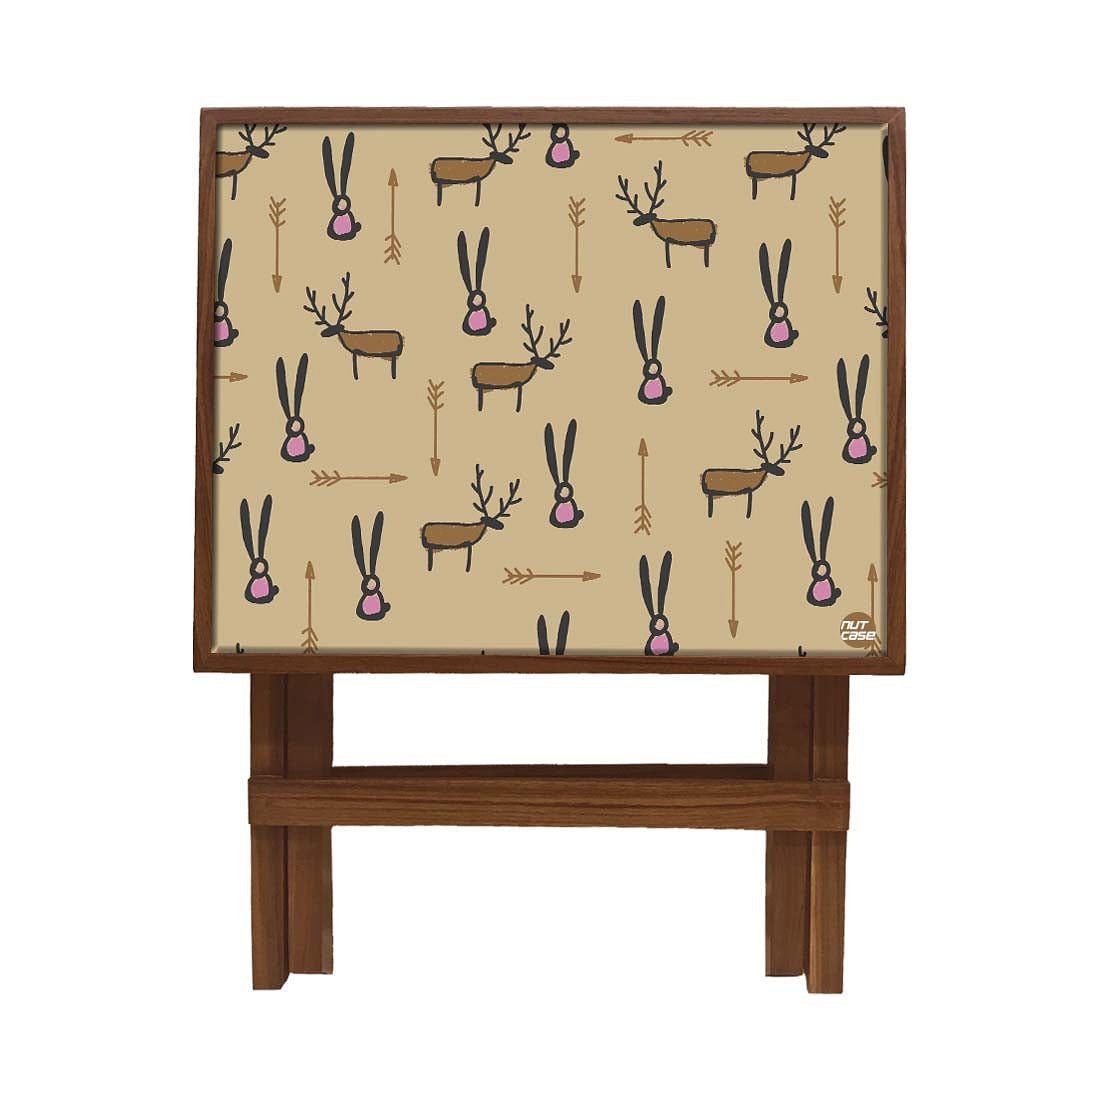 Folding Side Table in Bedroom - Teak Wood -Reindeer Nutcase